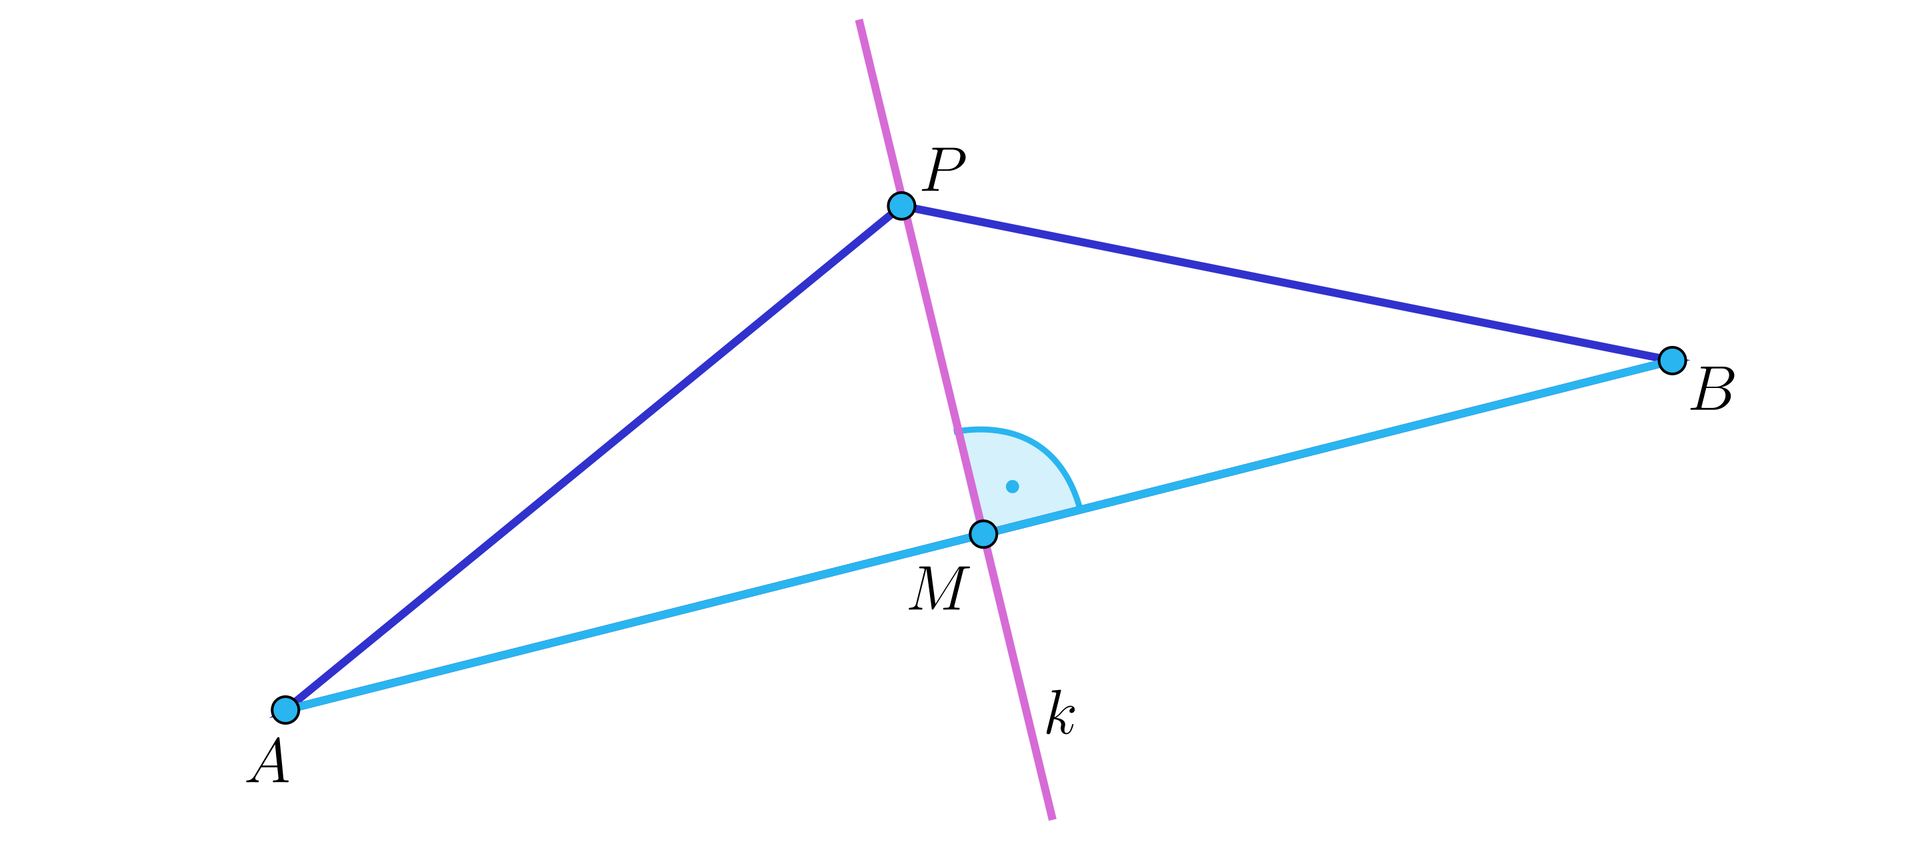 Ilustracja przedstawia trójkąt A B P oraz prostą k przecinającą odcinek A B się pod kątem prostym w punkcie M. Prosta k przechodzi przez wierzchołek trójkąta P.